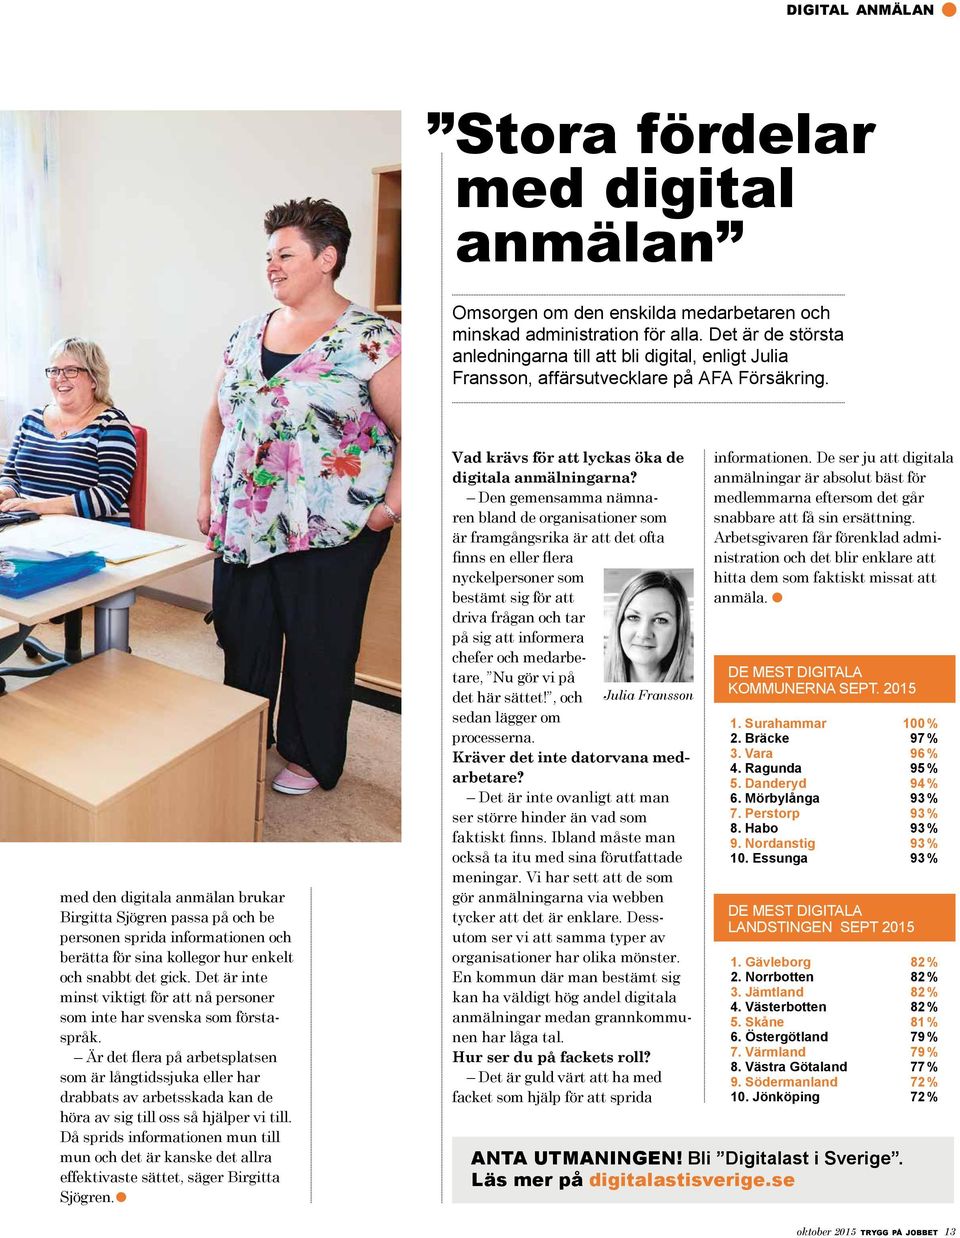 med den digitala anmälan brukar Birgitta Sjögren passa på och be personen sprida informationen och berätta för sina kollegor hur enkelt och snabbt det gick.